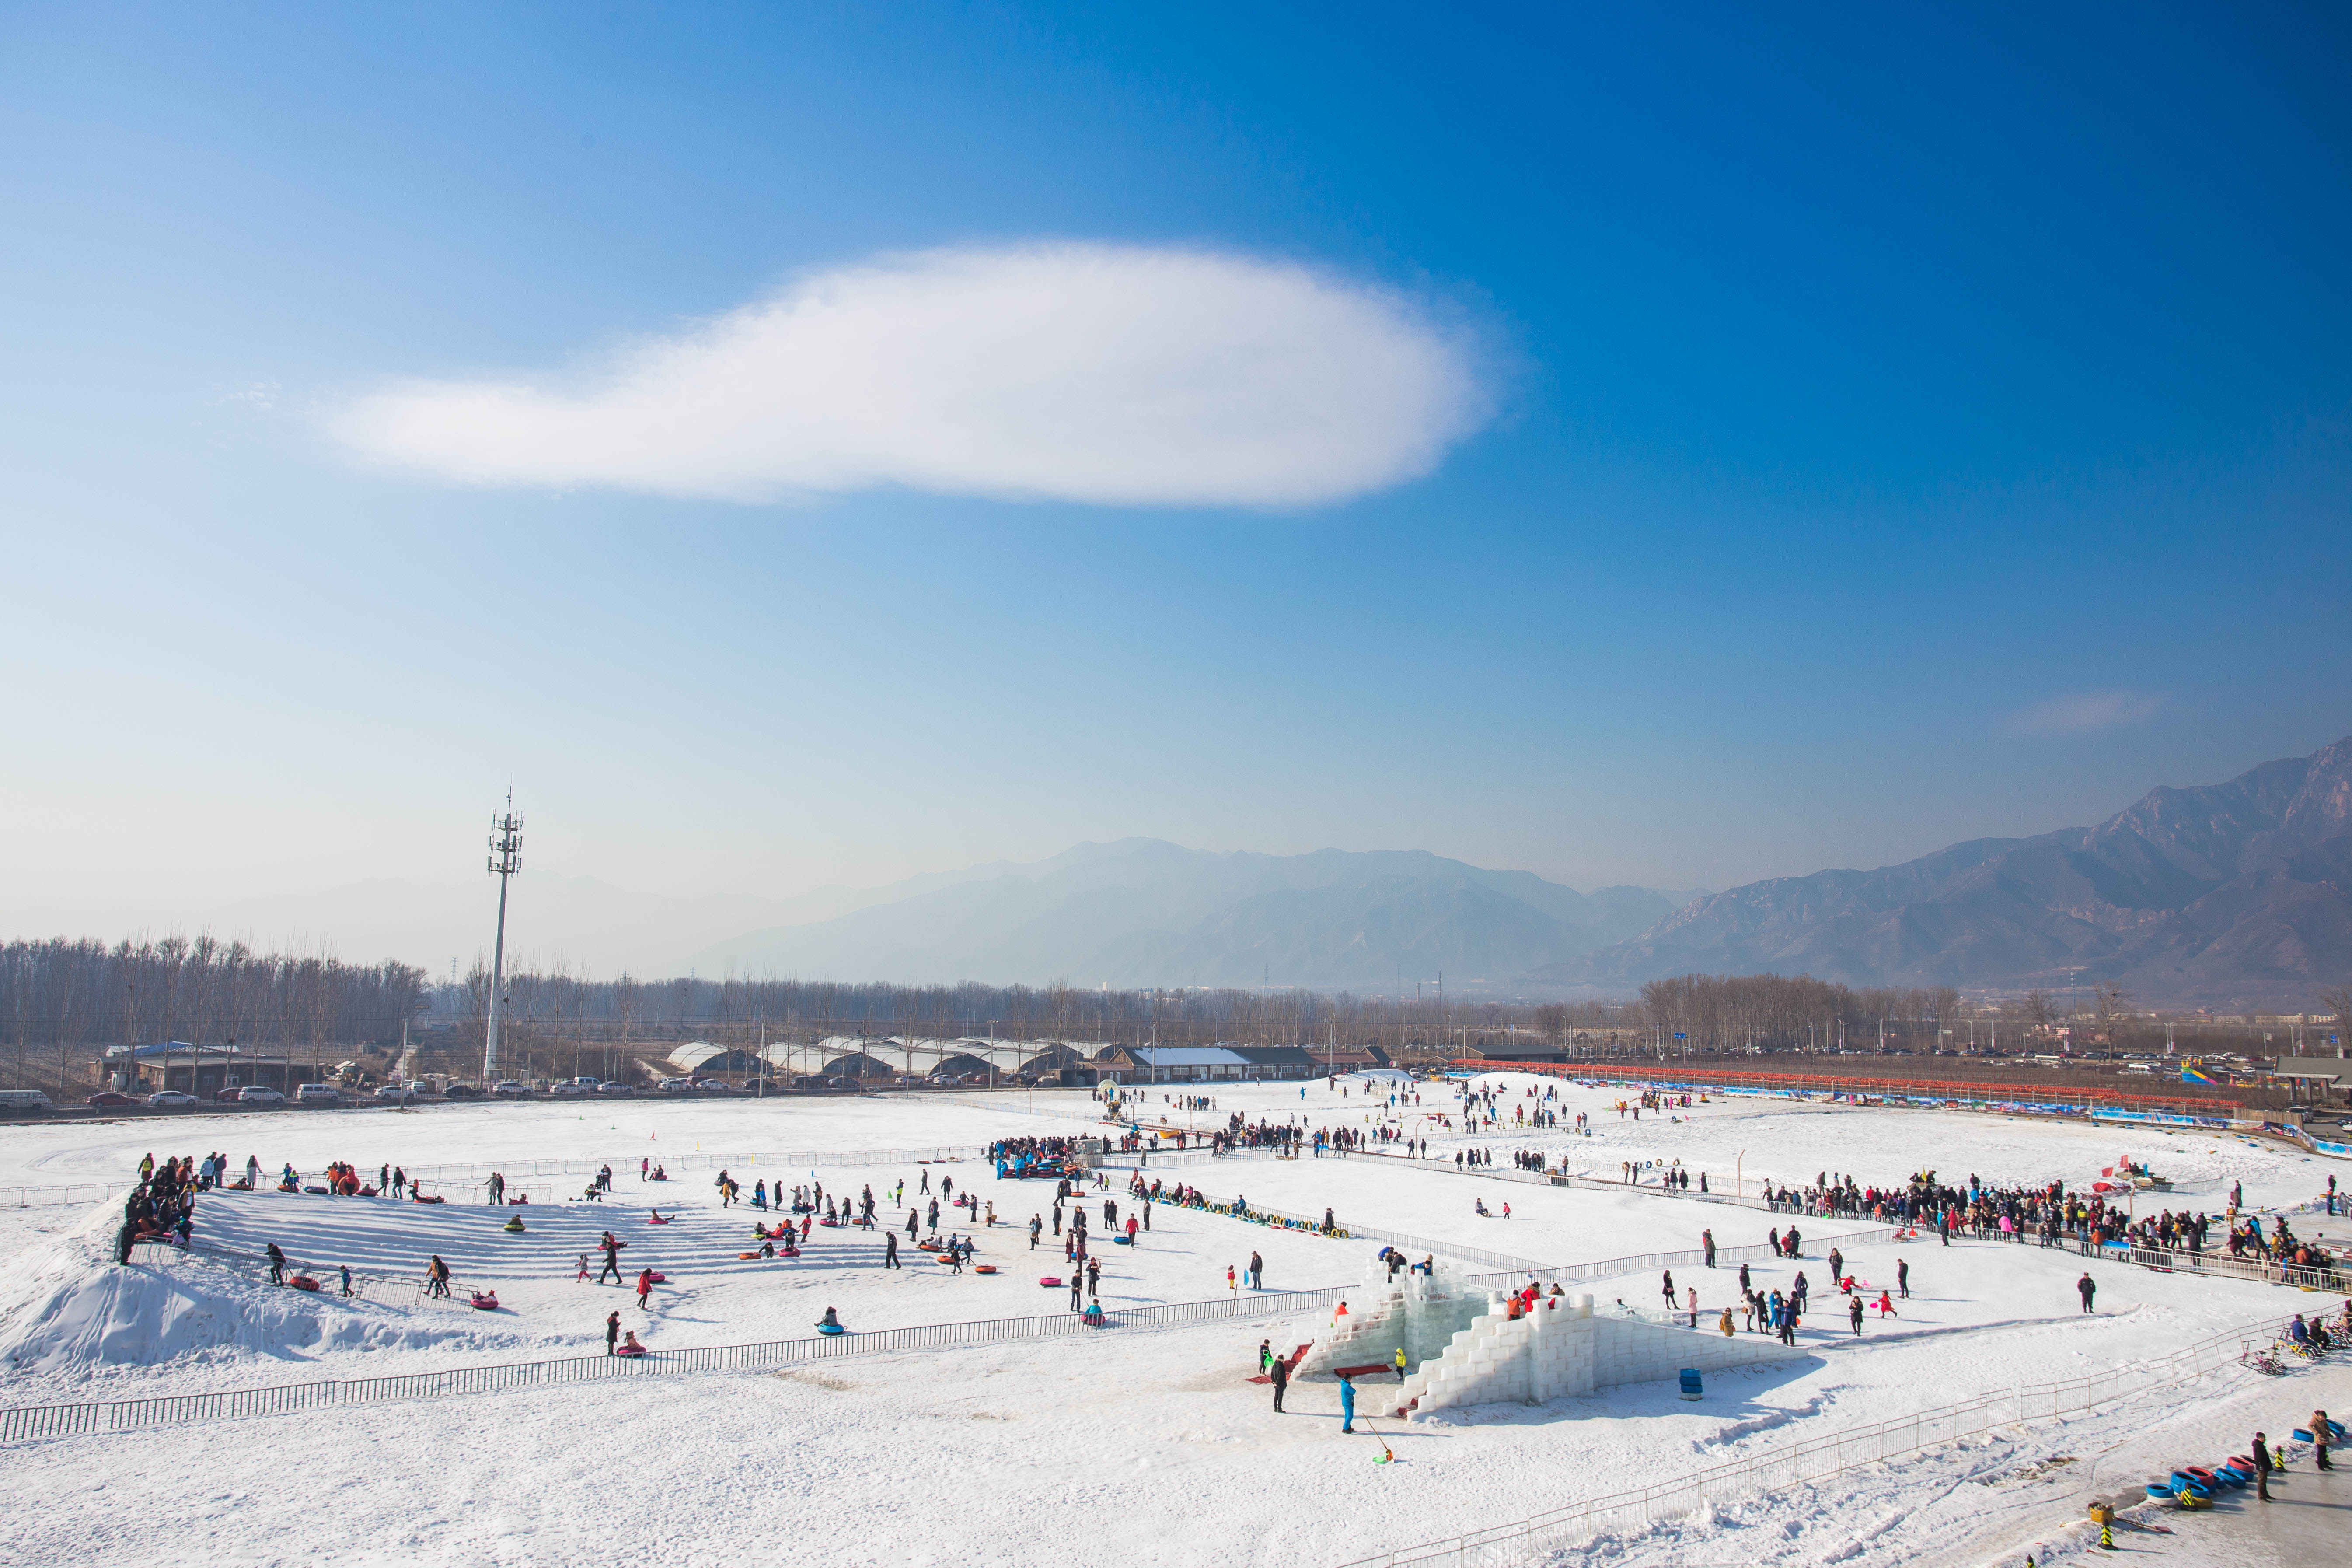 冬天北京有啥好玩的?这个冬奥会举办地都为你准备好了,让你玩个够